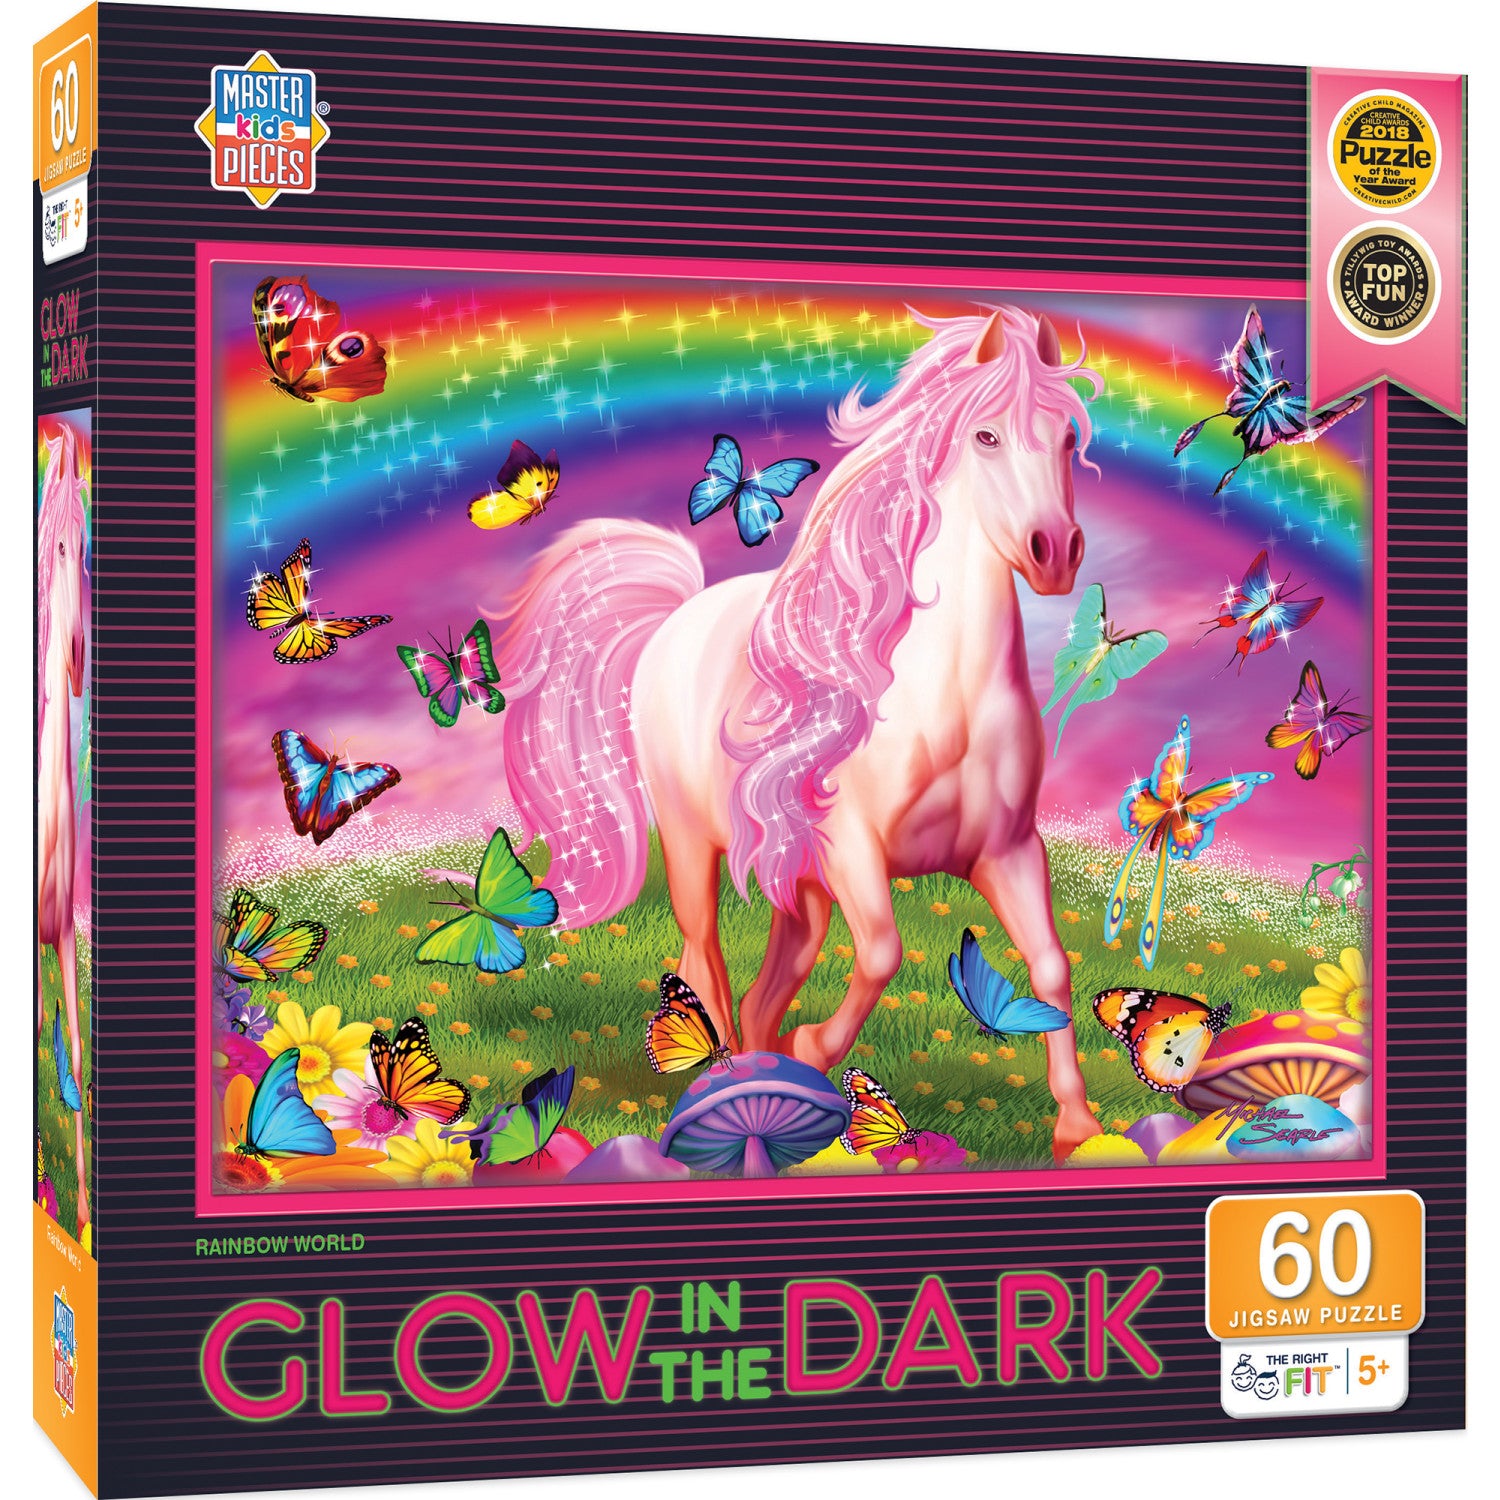 Glow in the Dark - Rainbow World 60 Piece Jigsaw Puzzle